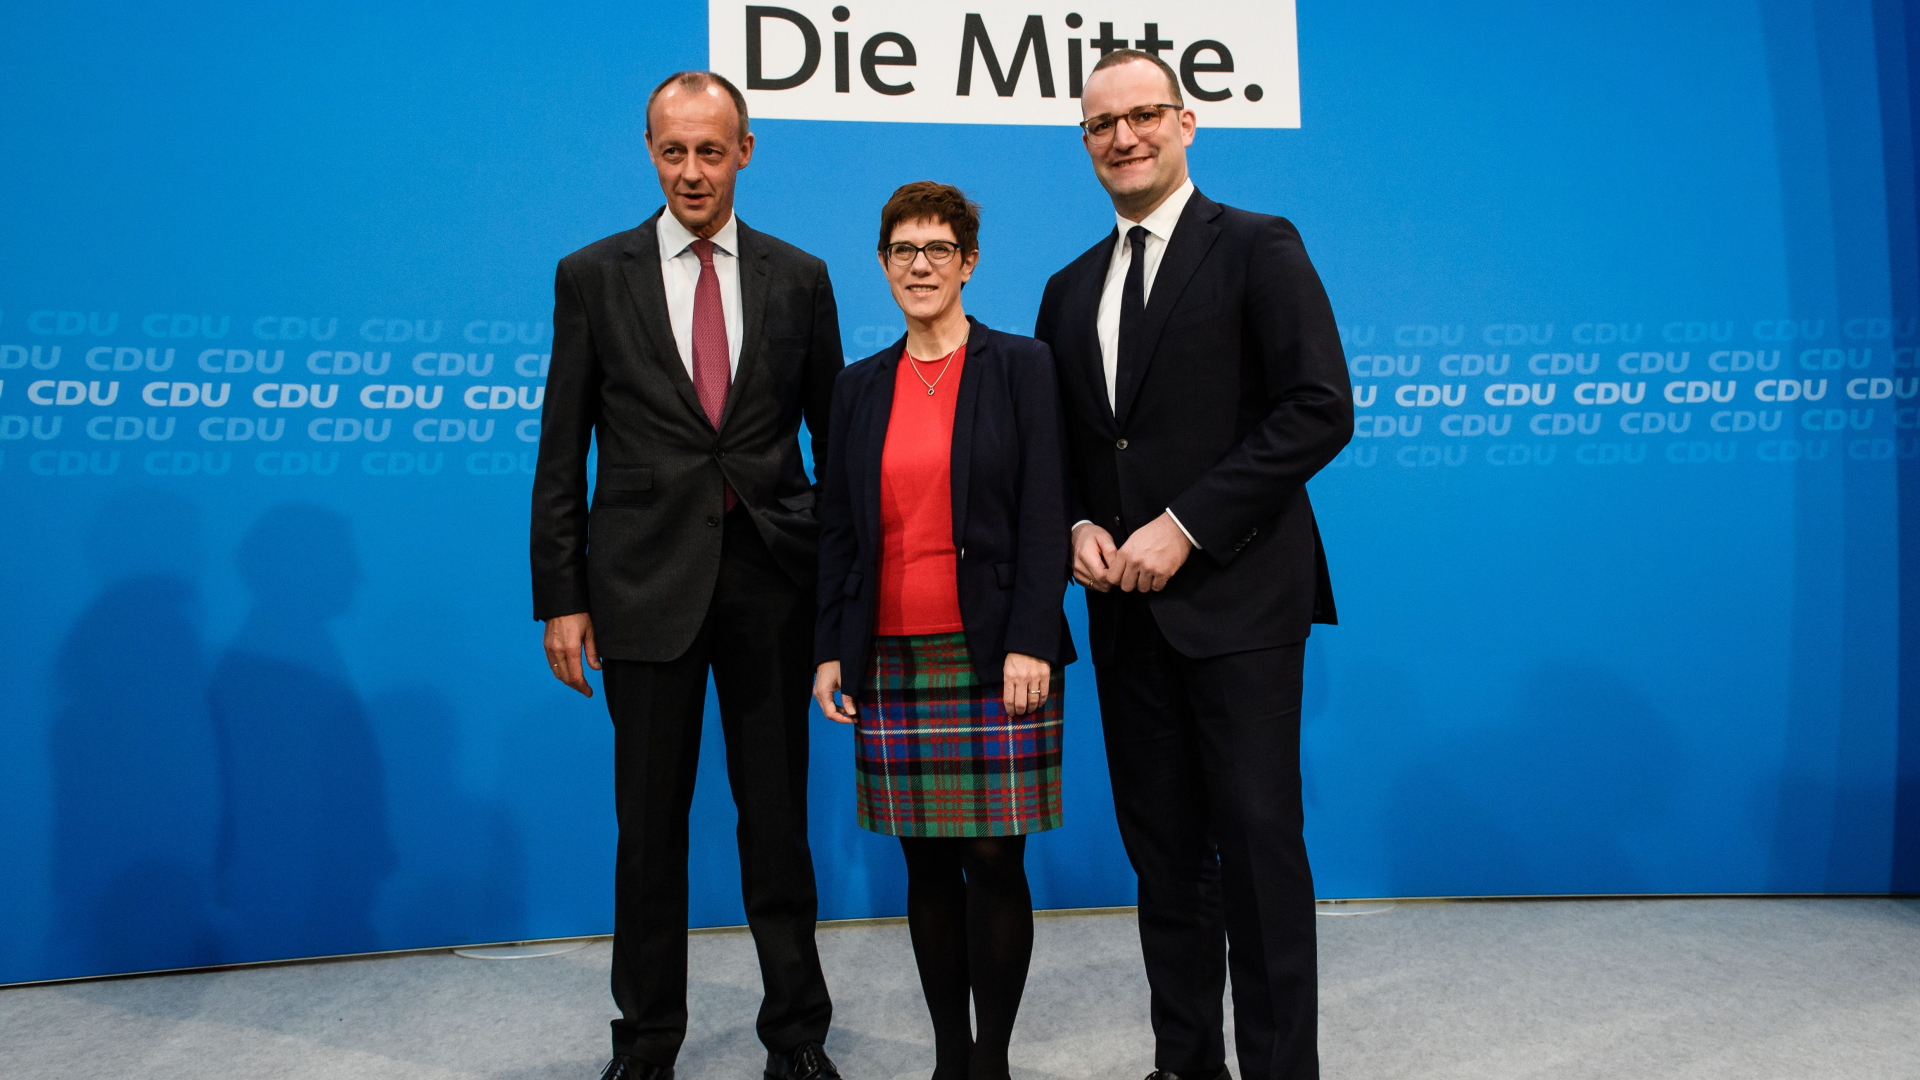 Friedrich Merz, Annegret Kramp-Karrenbauer und Jens Spahn | Bildquelle: CLEMENS BILAN/EPA-EFE/REX/Shutte